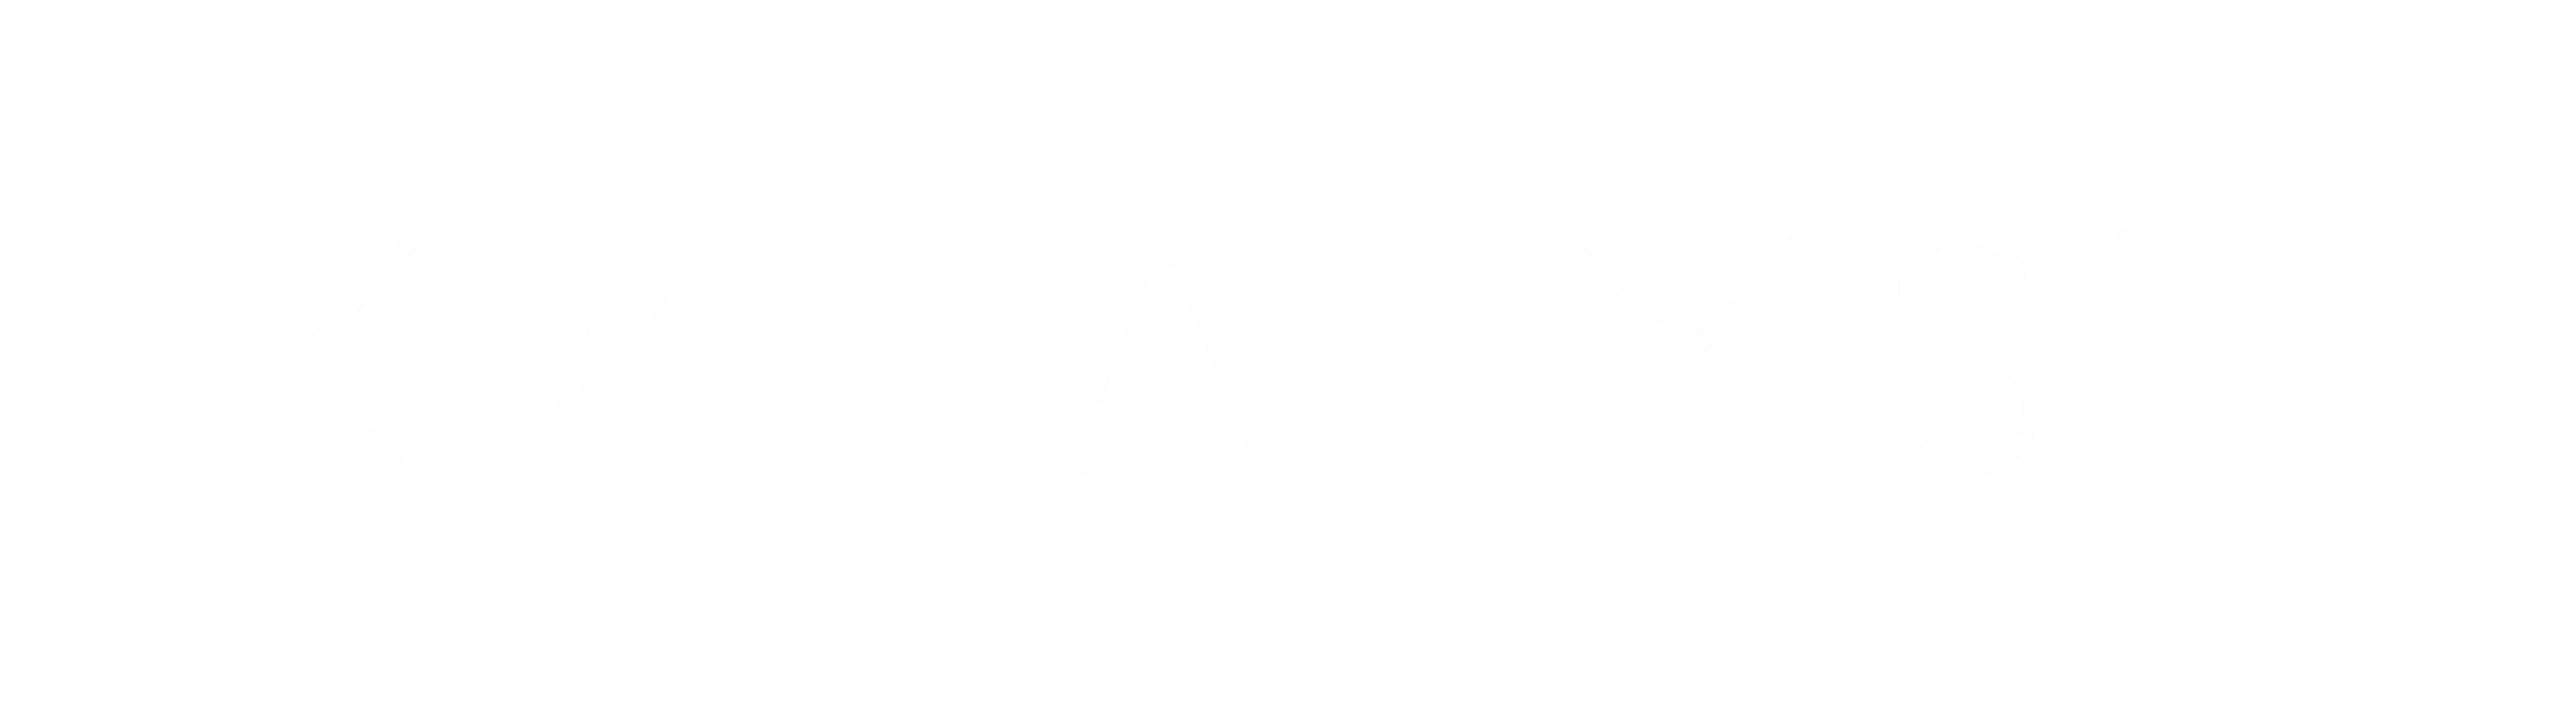 KATALYST_logo